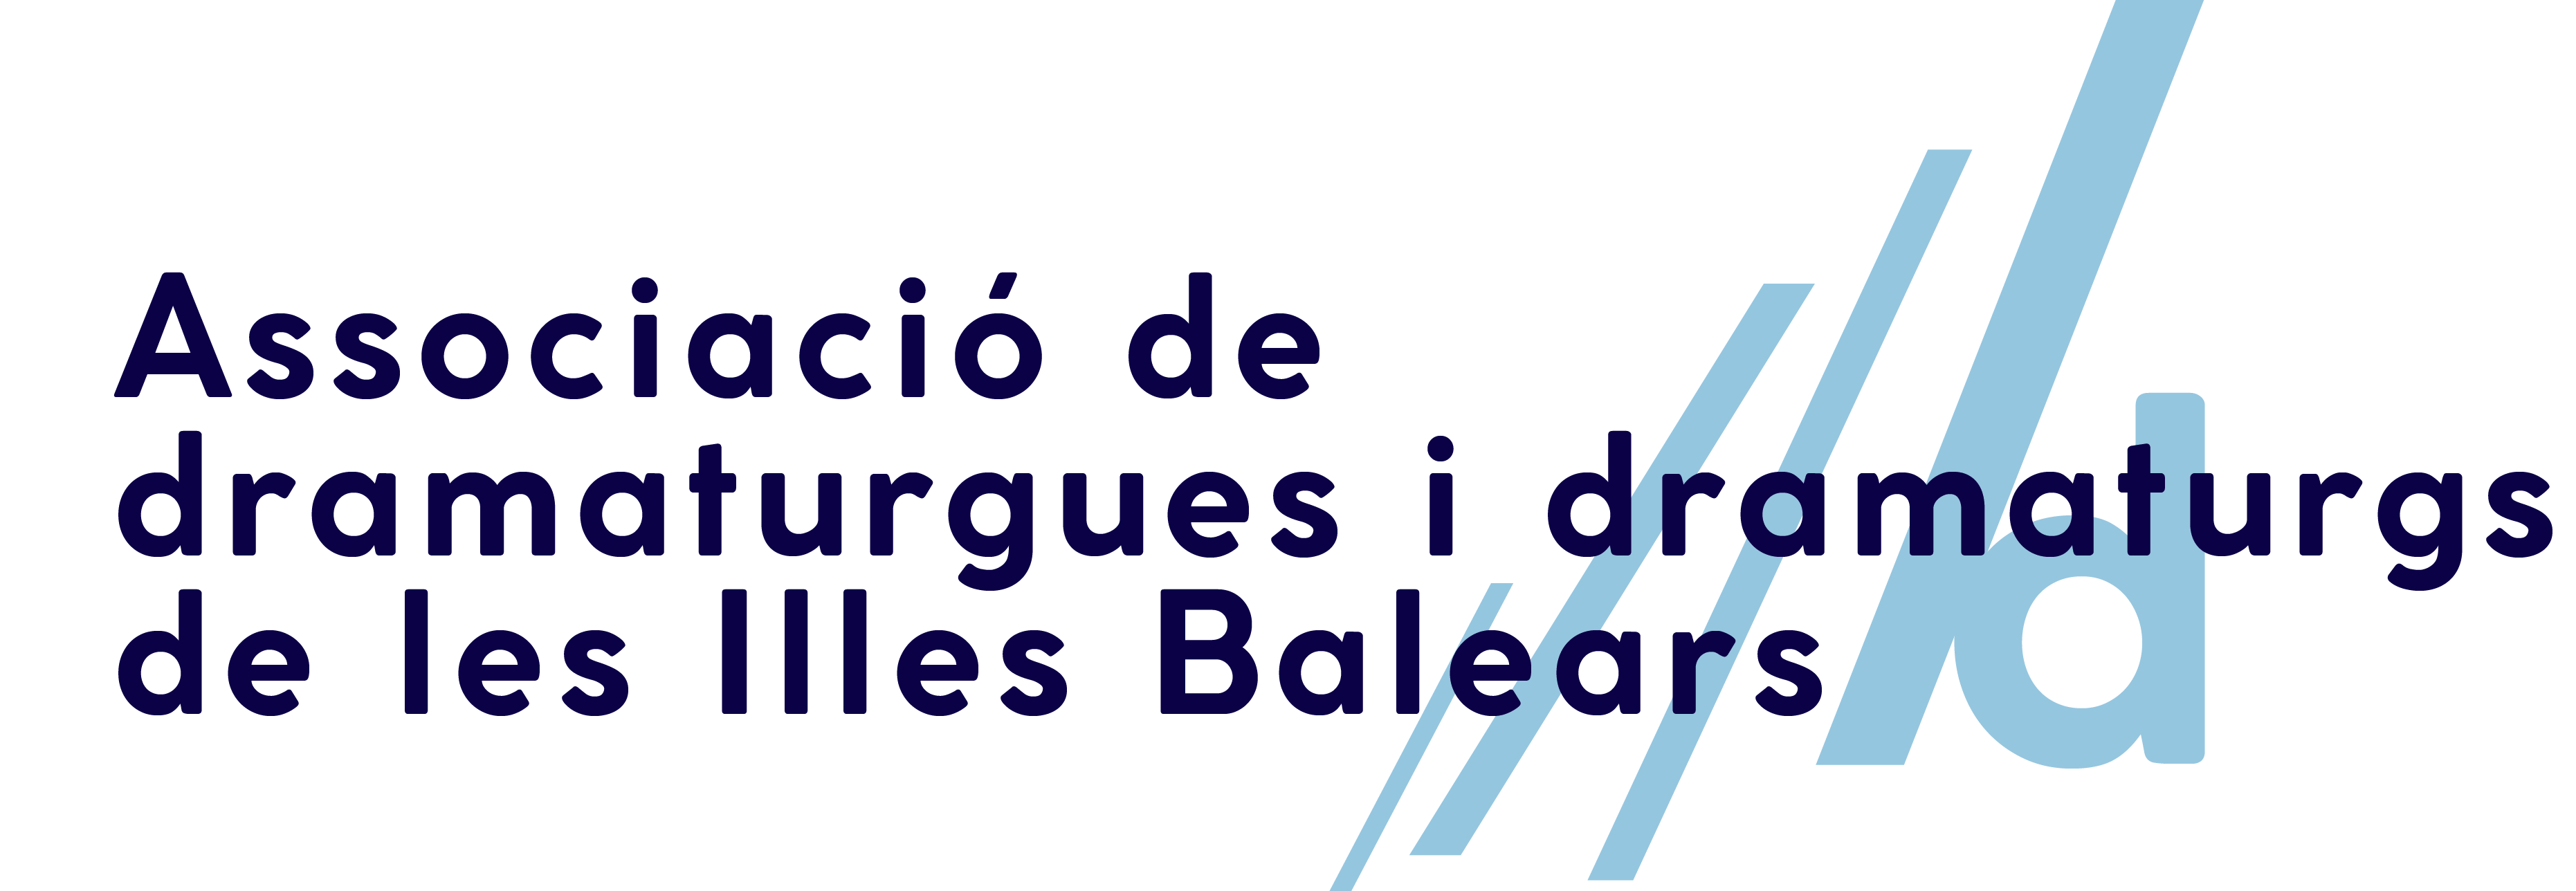 ADIB - Associació de dramaturgues i dramaturgs de les Illes Balears